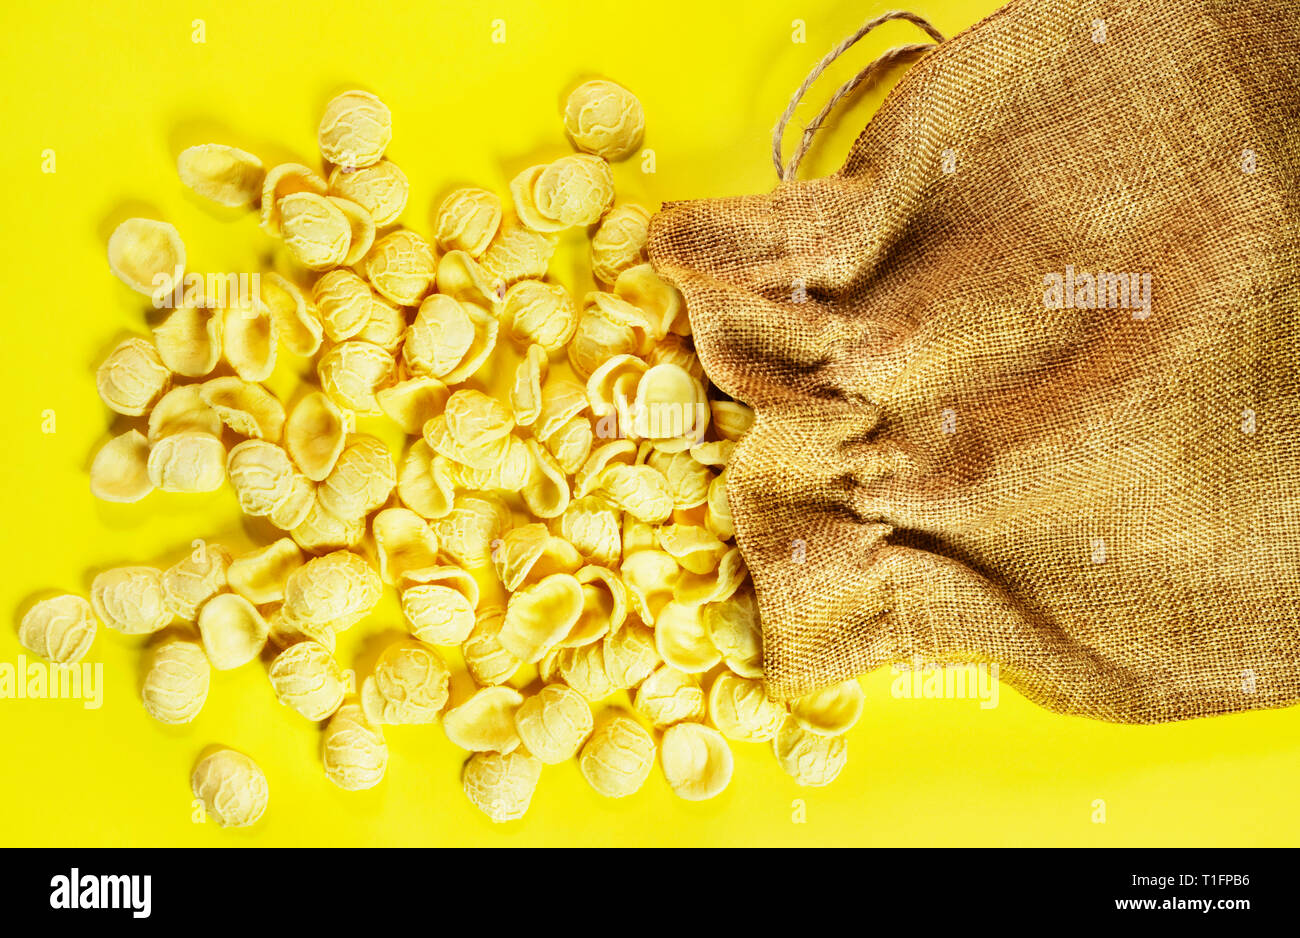 Pasta Orecchiette auf einem farbigen Hintergrund, eine kleine Ohrform Pasta in der Mitte dünner als am Rand und eine raue Oberfläche, die Nudeln aus o Stockfoto